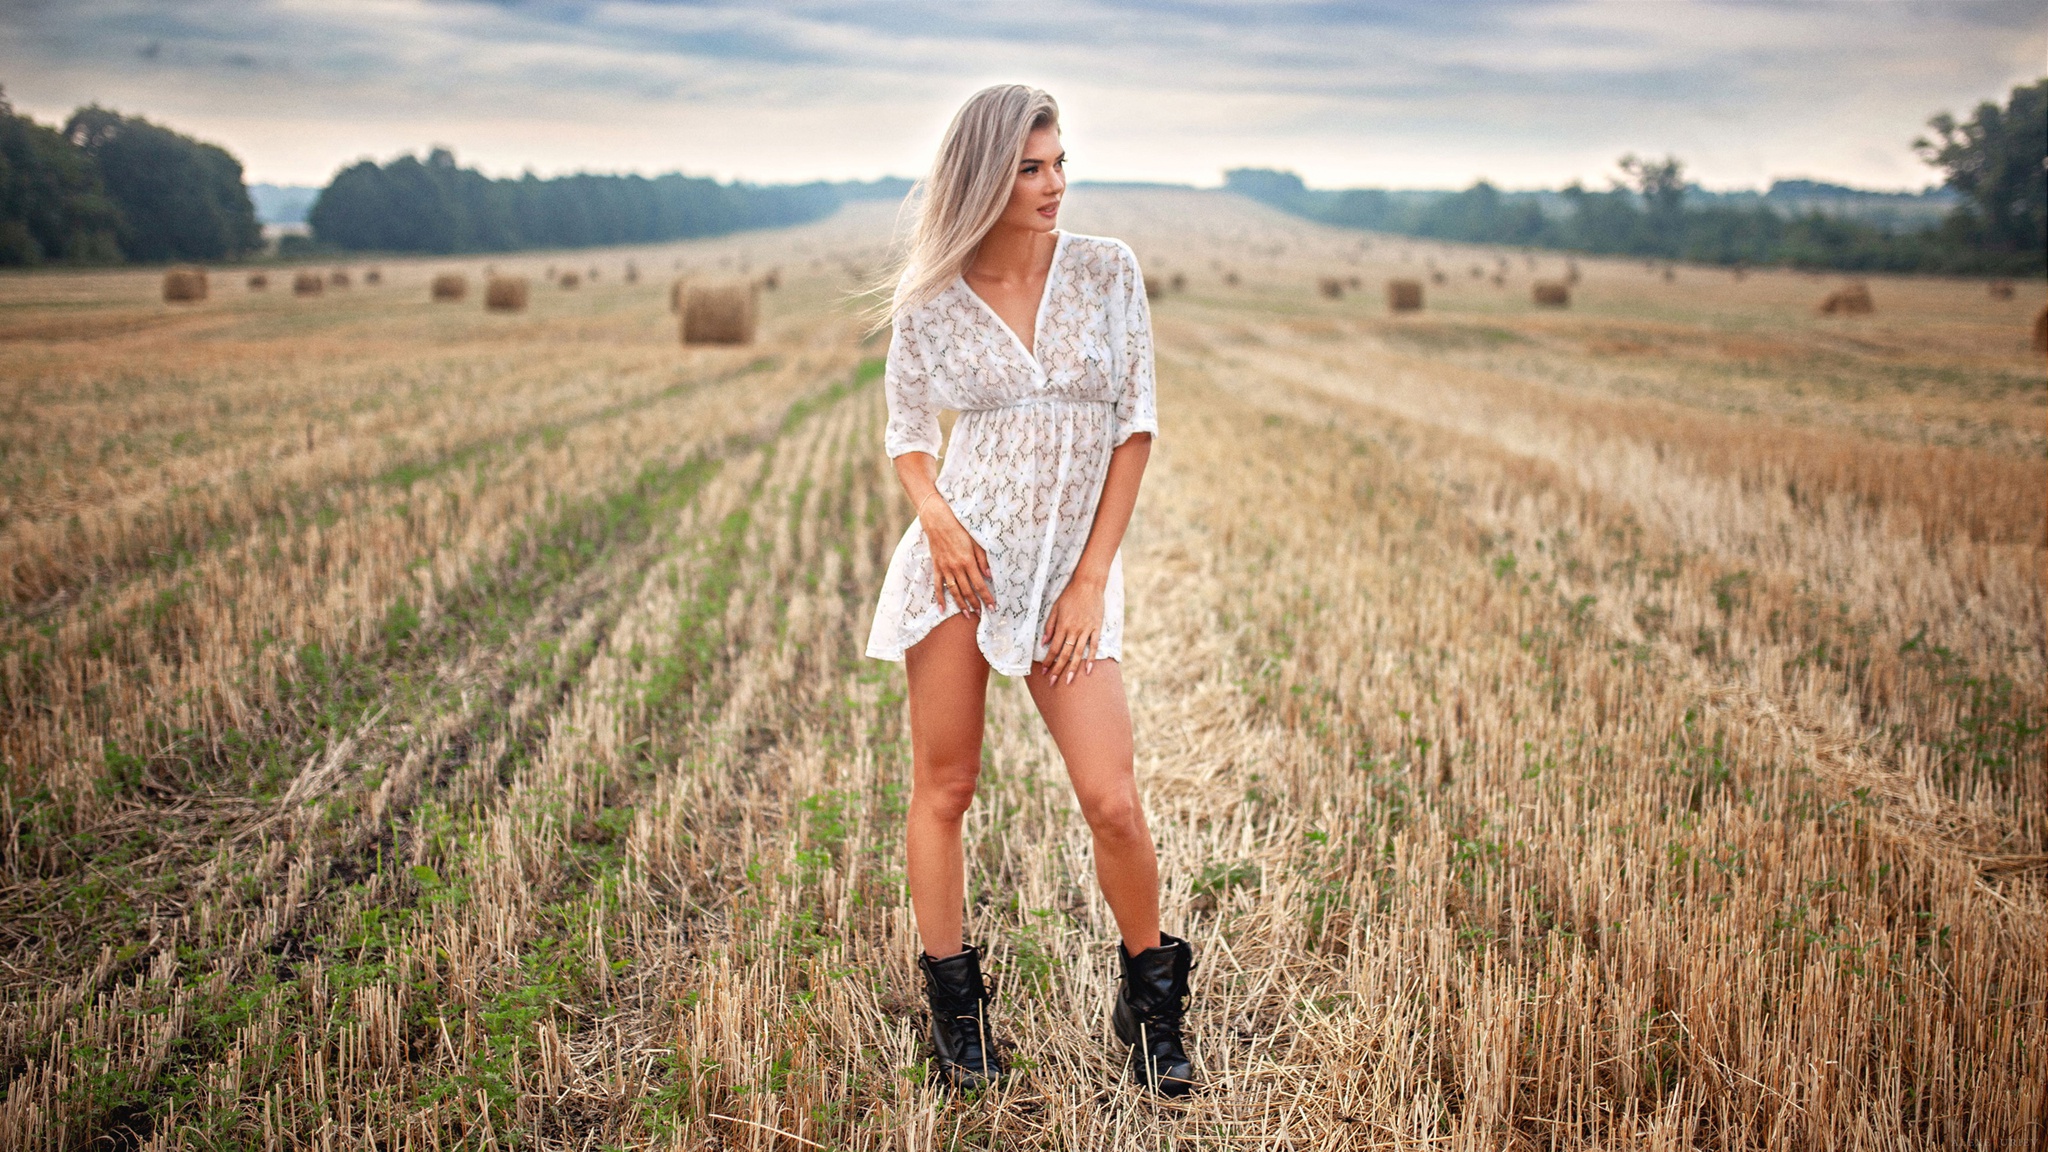 Блондинка оголенная в пшеничном поле с косичками на голове